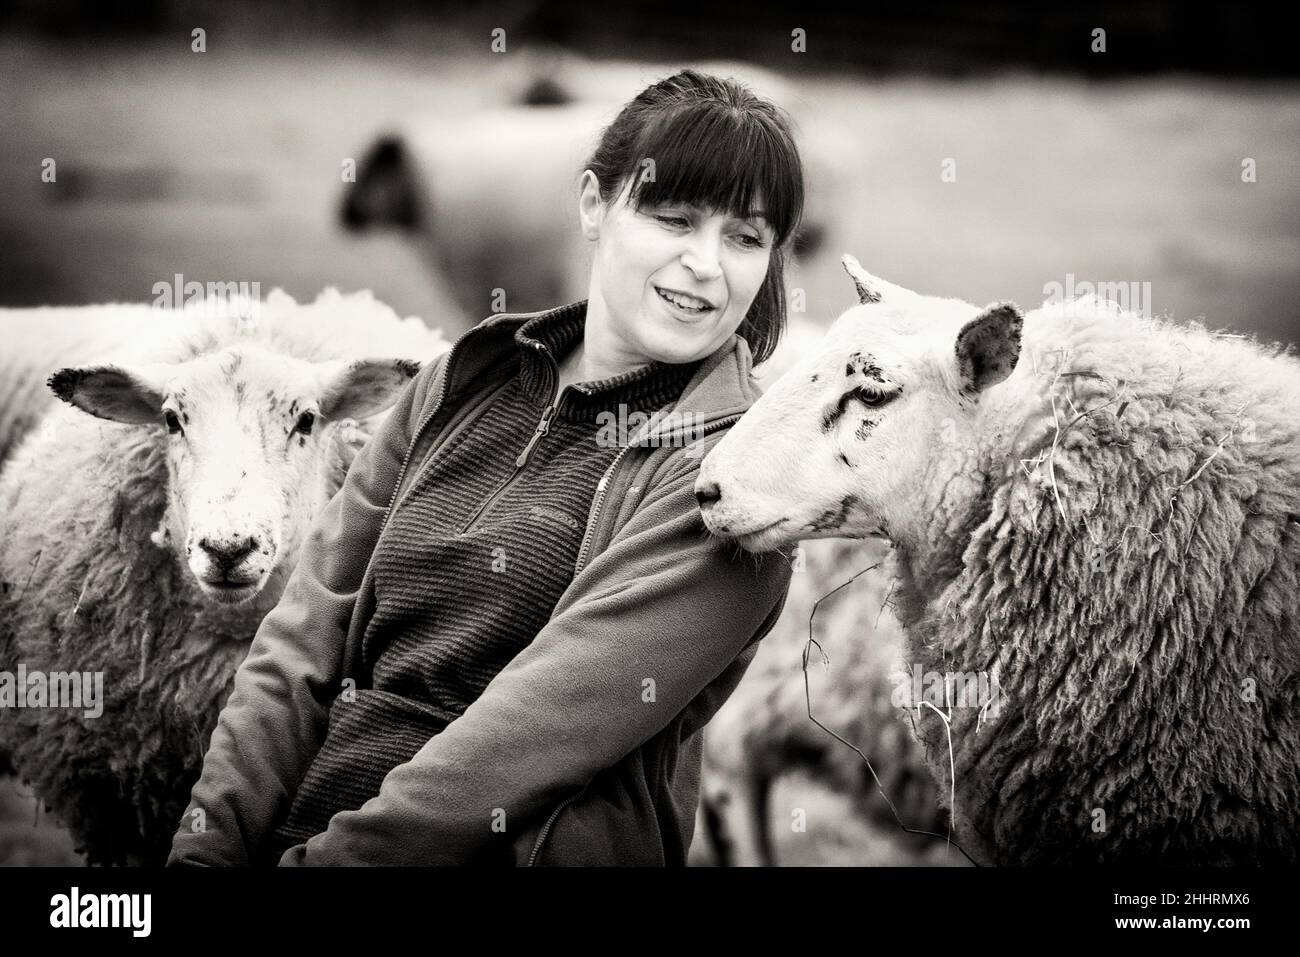 La Pastora Vegana. Imágenes de una mujer en el norte de Escocia que cuida de un pequeño rebaño de ovejas, muchas de las cuales tienen problemas de edad y salud. Foto de stock